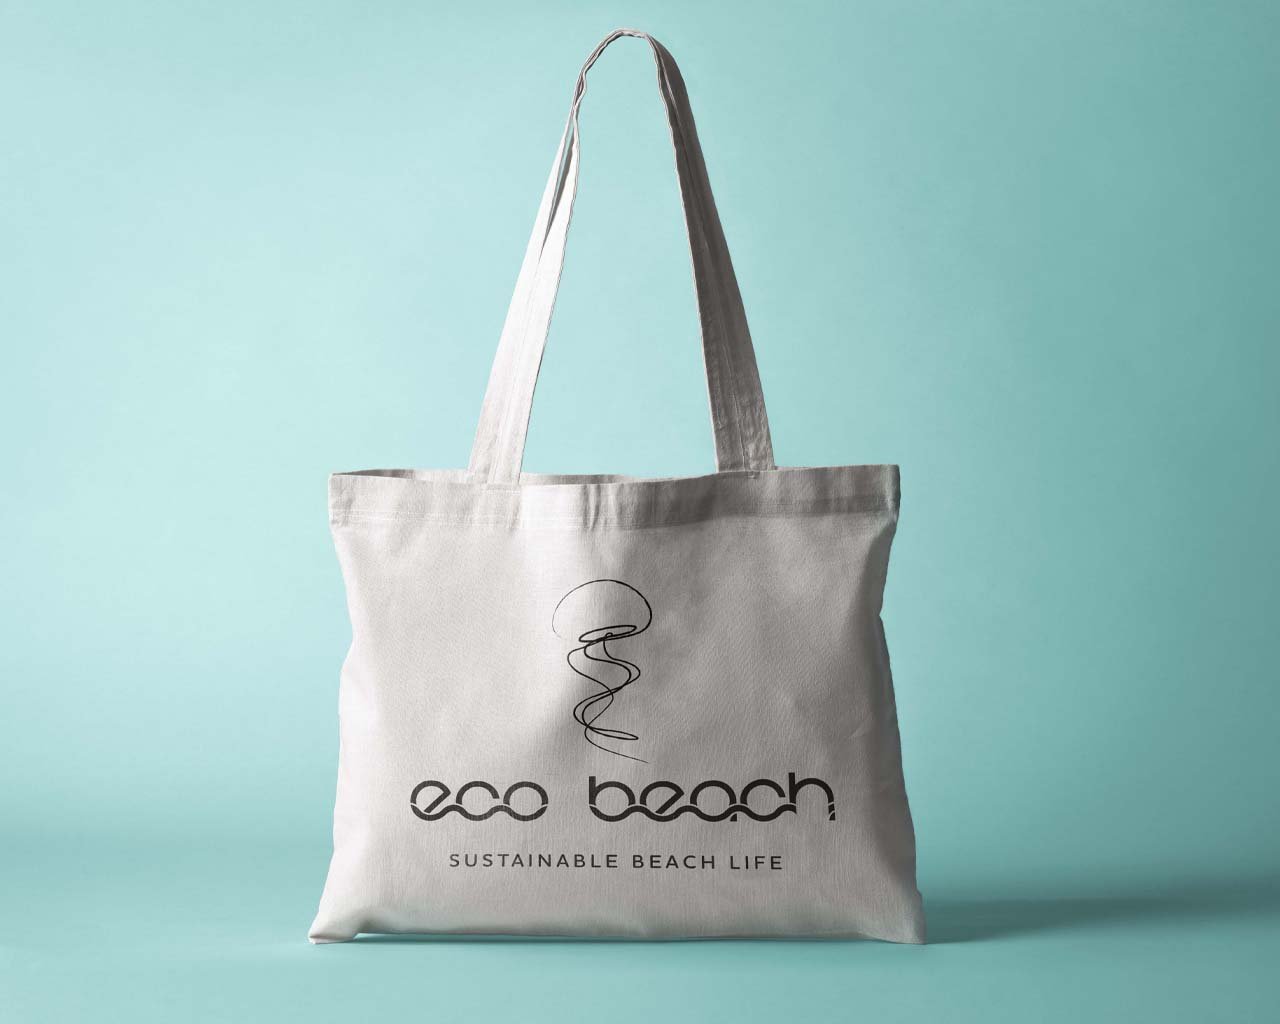 eco-beach bag.jpg